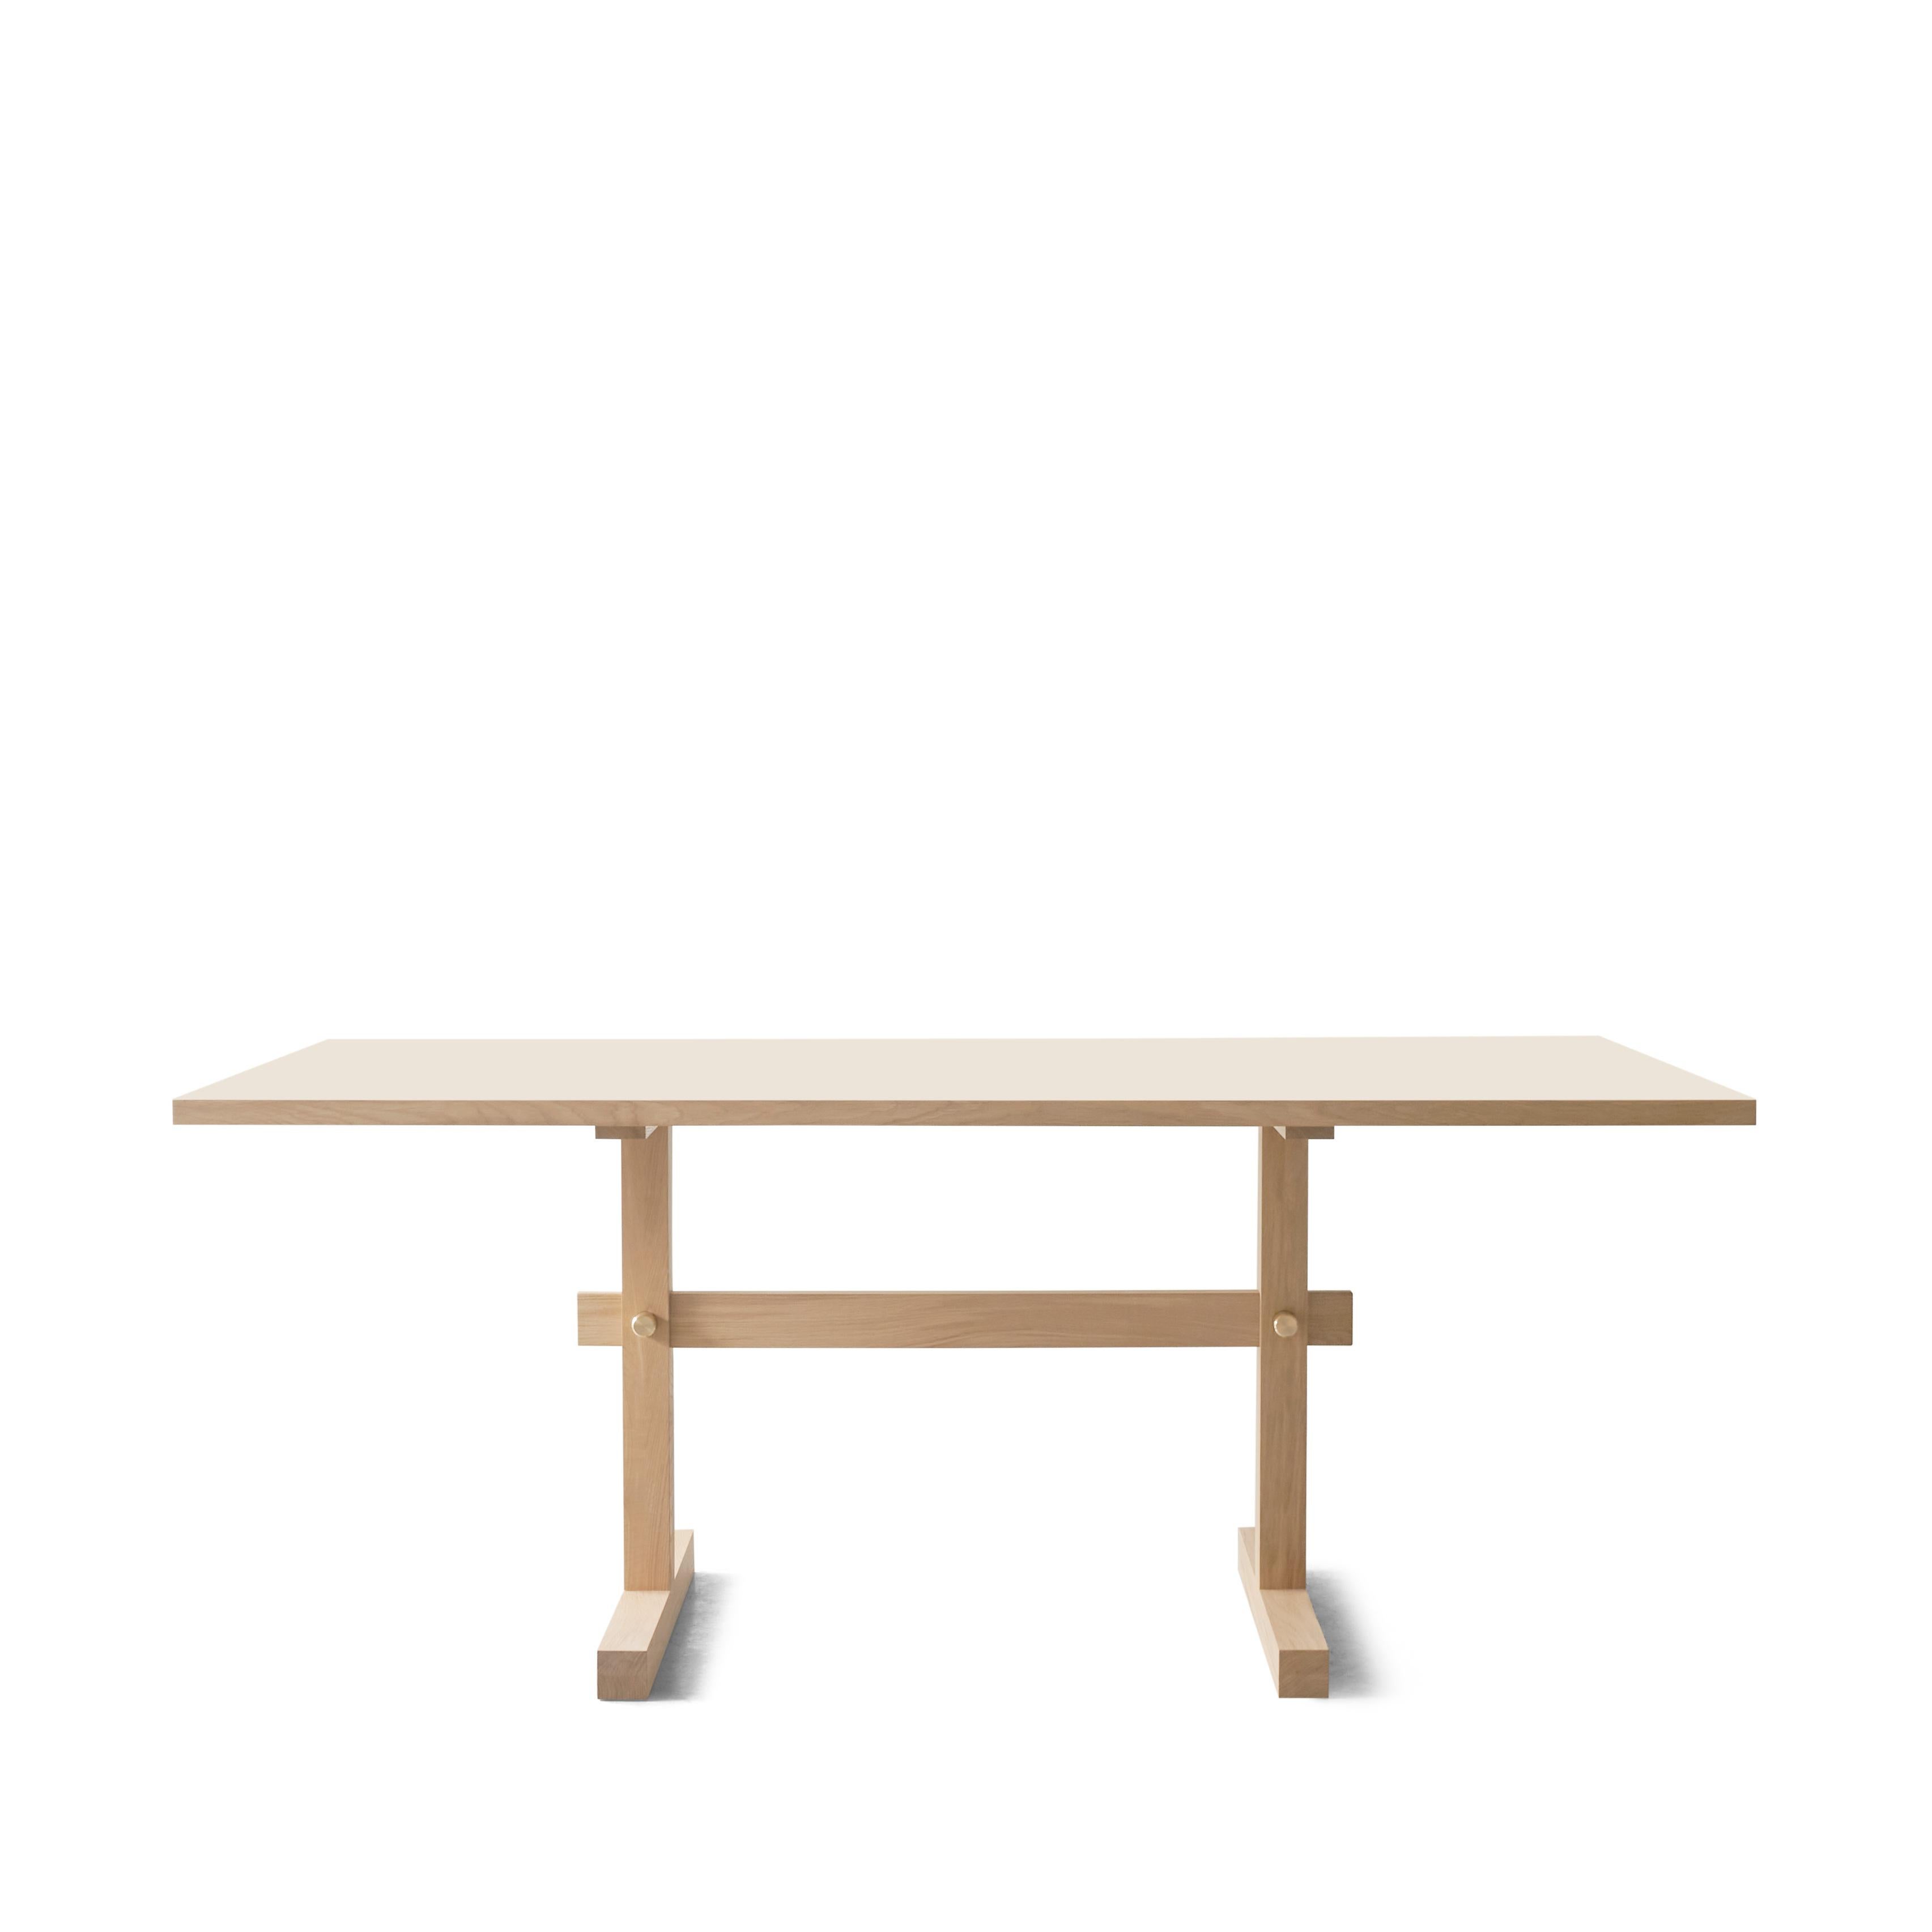 La table de salle à manger Gaspard se définit par une silhouette rigoureuse et des lignes épurées. Le niveau clinique des détails et la simplicité caricaturale, font parler le matériel. La construction est pratique et simple jusque dans les moindres